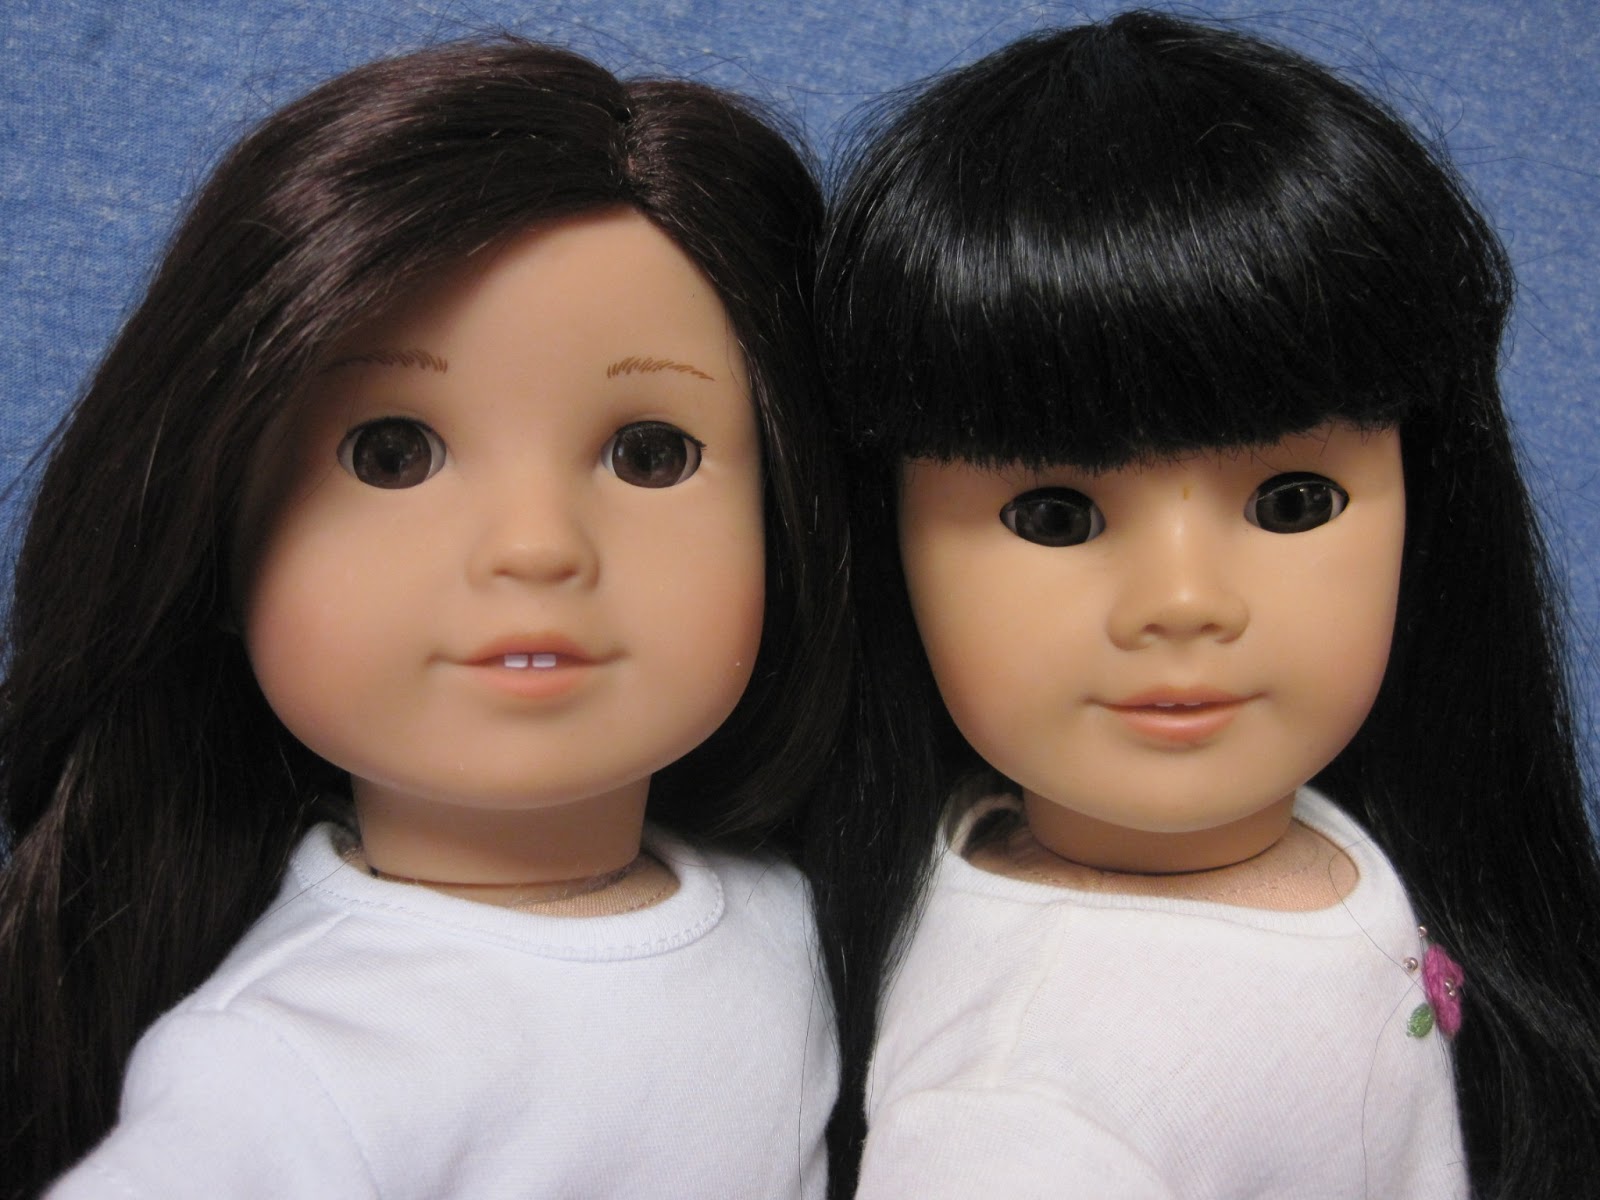 Mothers doll. Американские куклы для девочек. Название куклы без лица. Сравнение кукла и девочка. What's her face кукла.